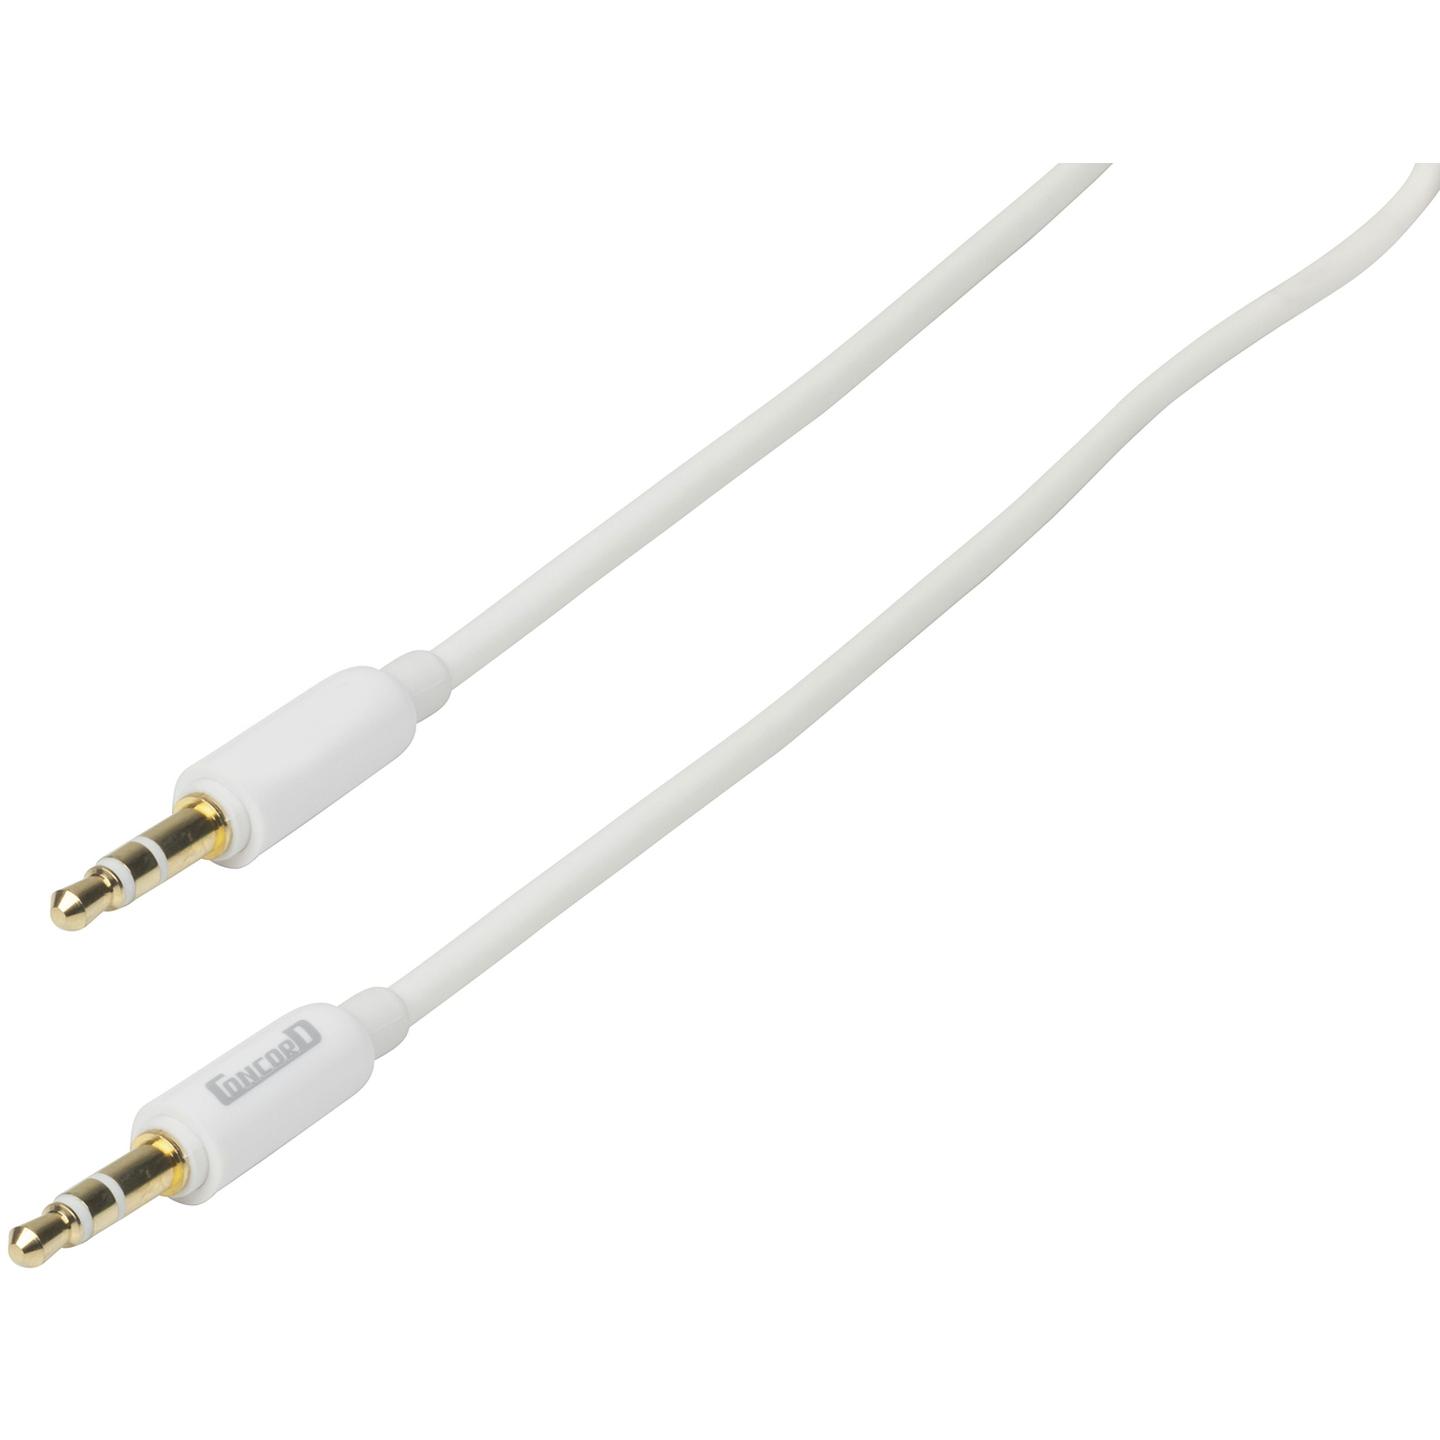 Slim 3.5mm Stereo Plug to 3.5mm Stereo Plug Cable - 2m